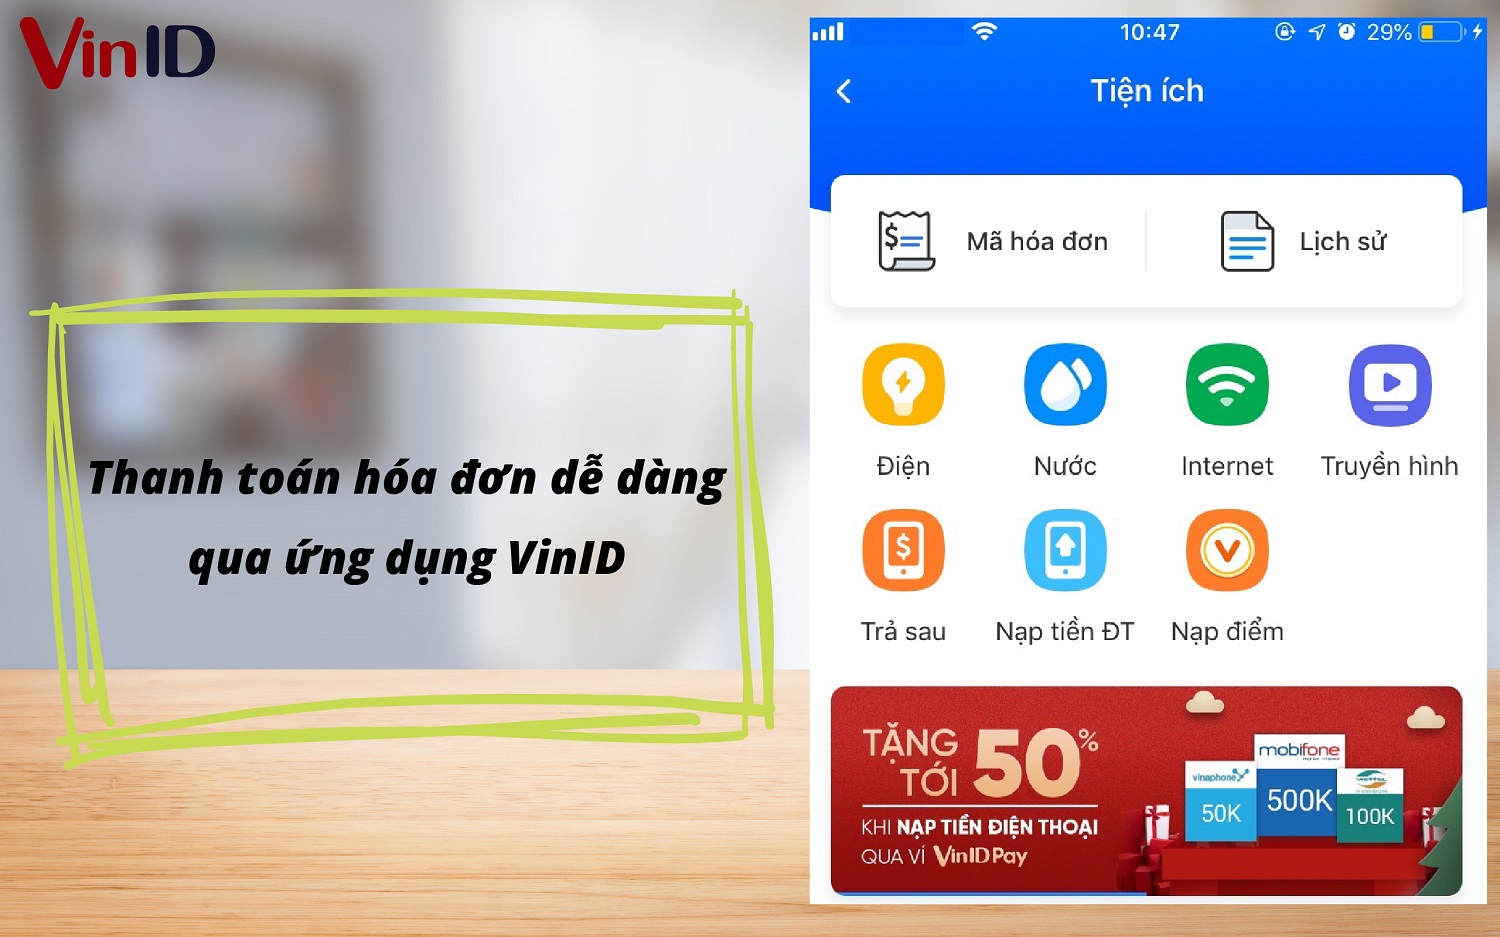 Thanh toán hóa đơn tiền điện, nước, internet, truyền hình dễ dàng qua app VinID